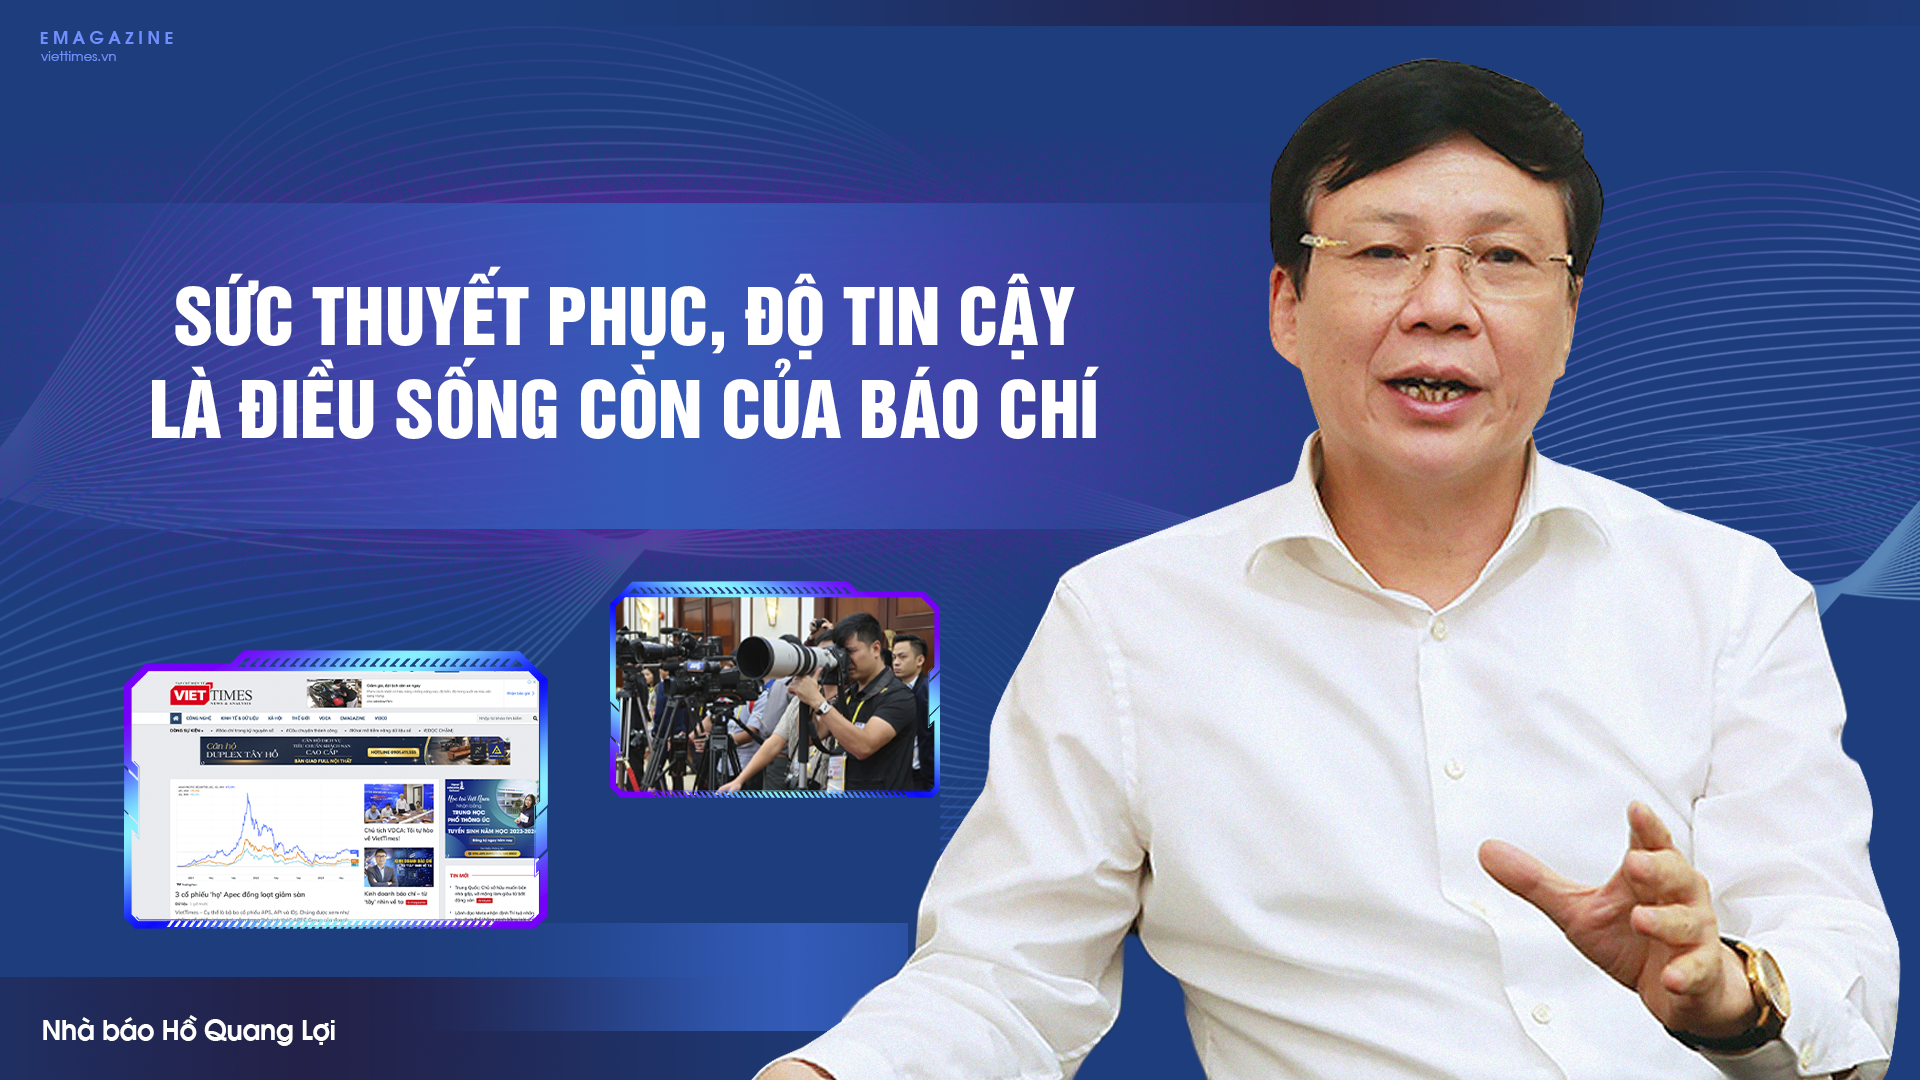 Nhà báo Hồ Quang Lợi - Phó Chủ tịch Hội Truyền thông số Việt Nam (VDCA), nguyên Phó Chủ tịch Thường trực Hội Nhà báo Việt Nam 